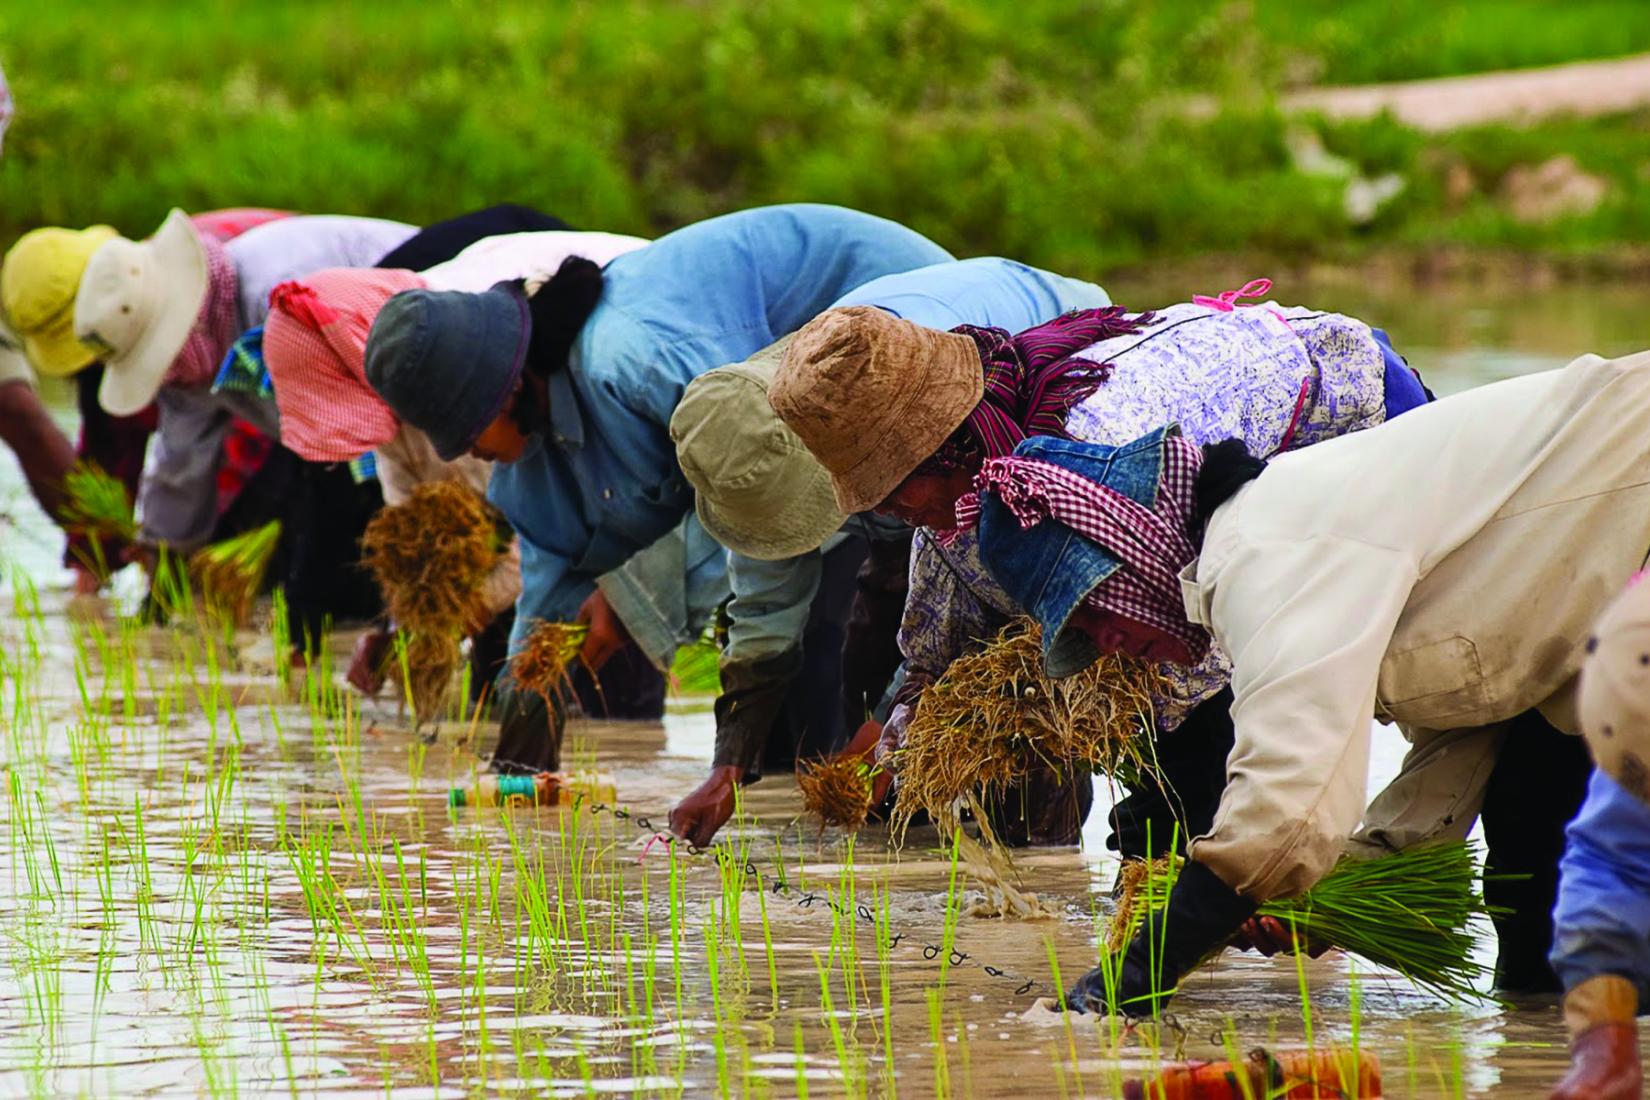 Cambodian smallholder farmers in rice fields.